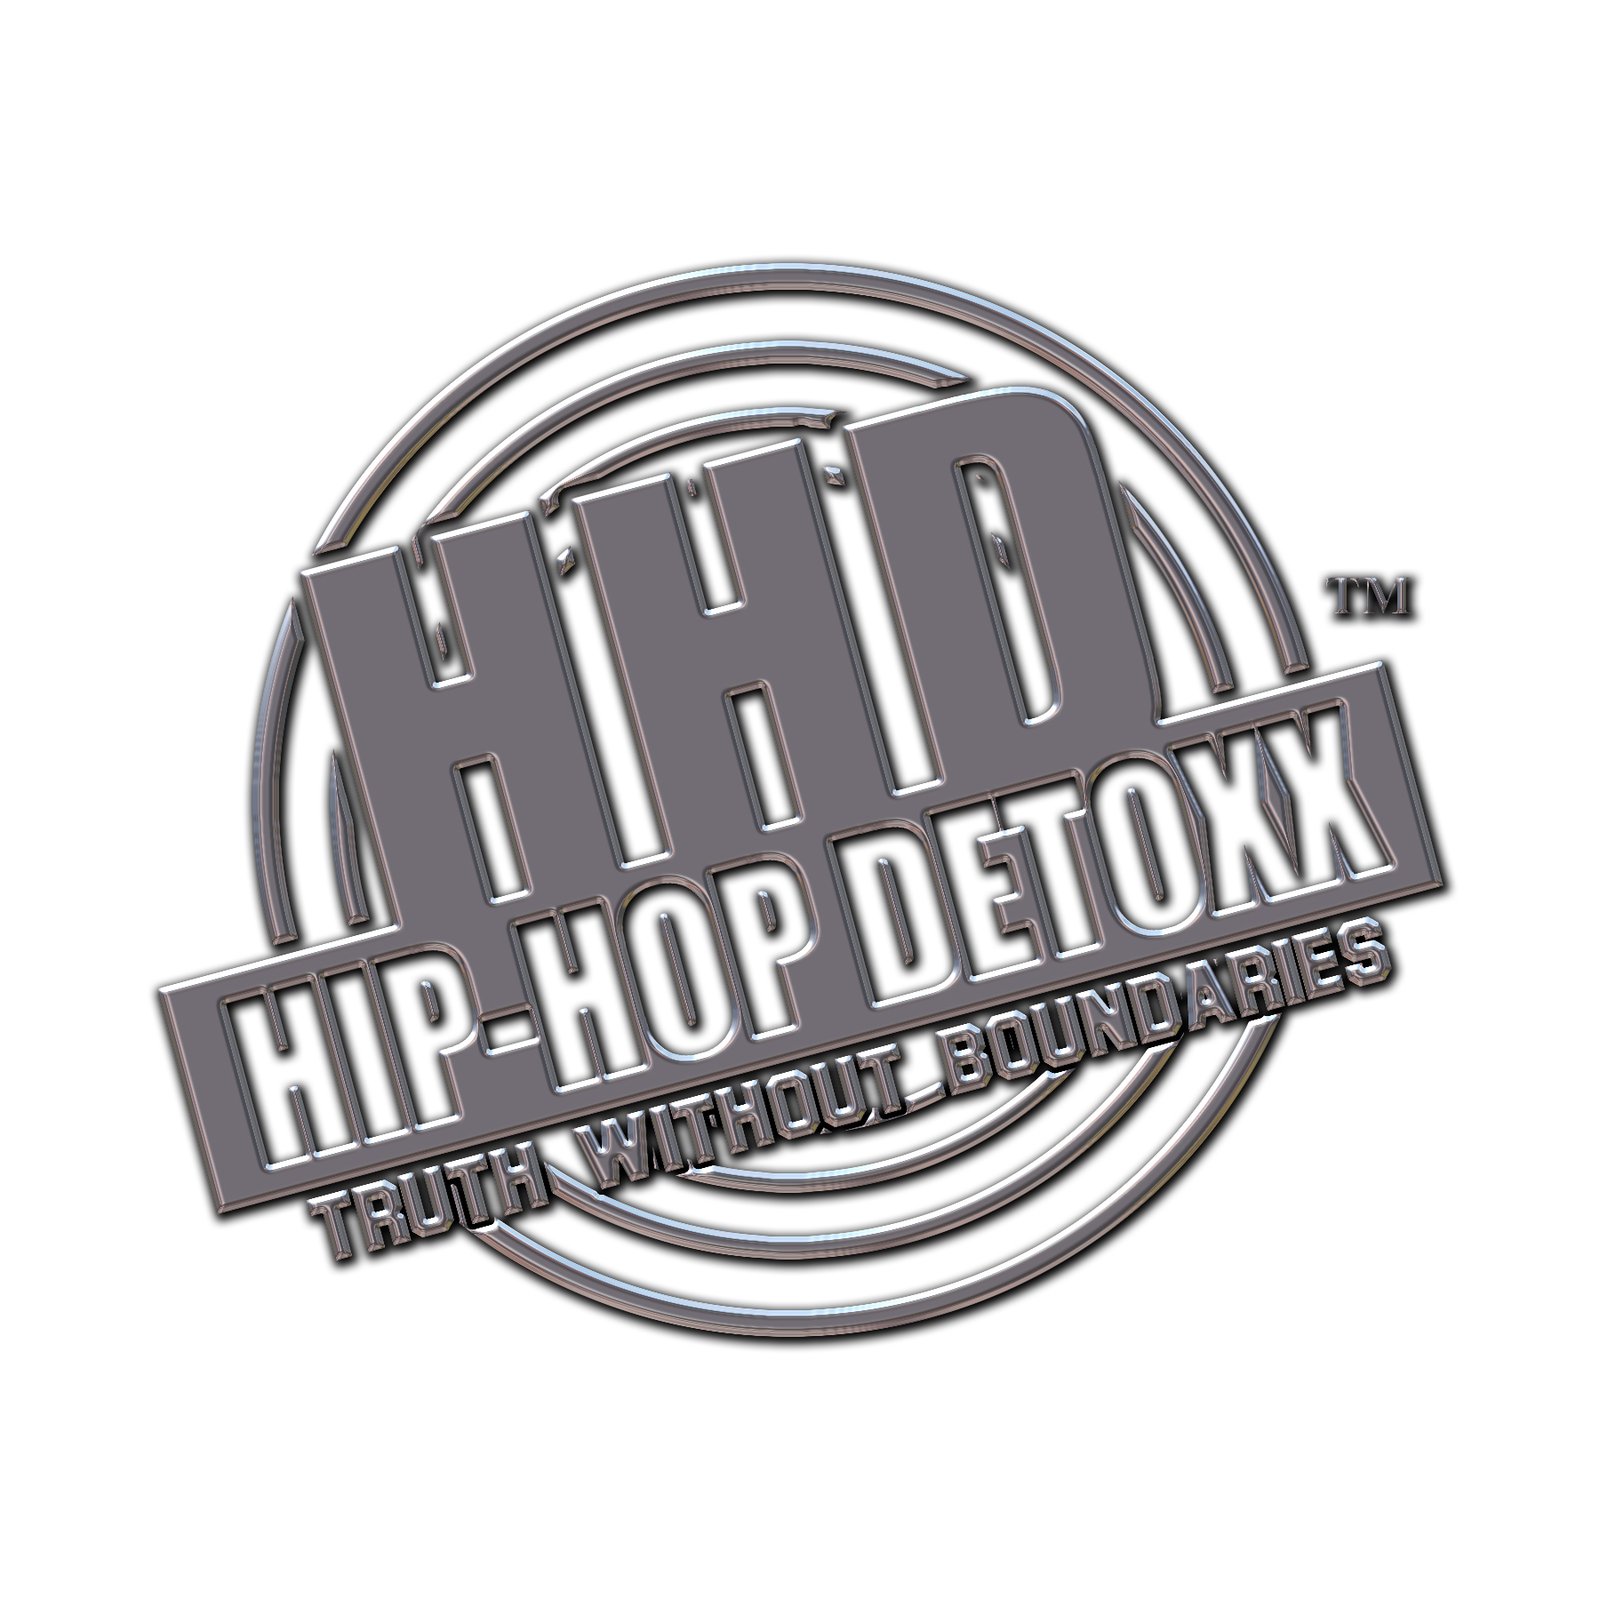 Hip-Hop DetoxX